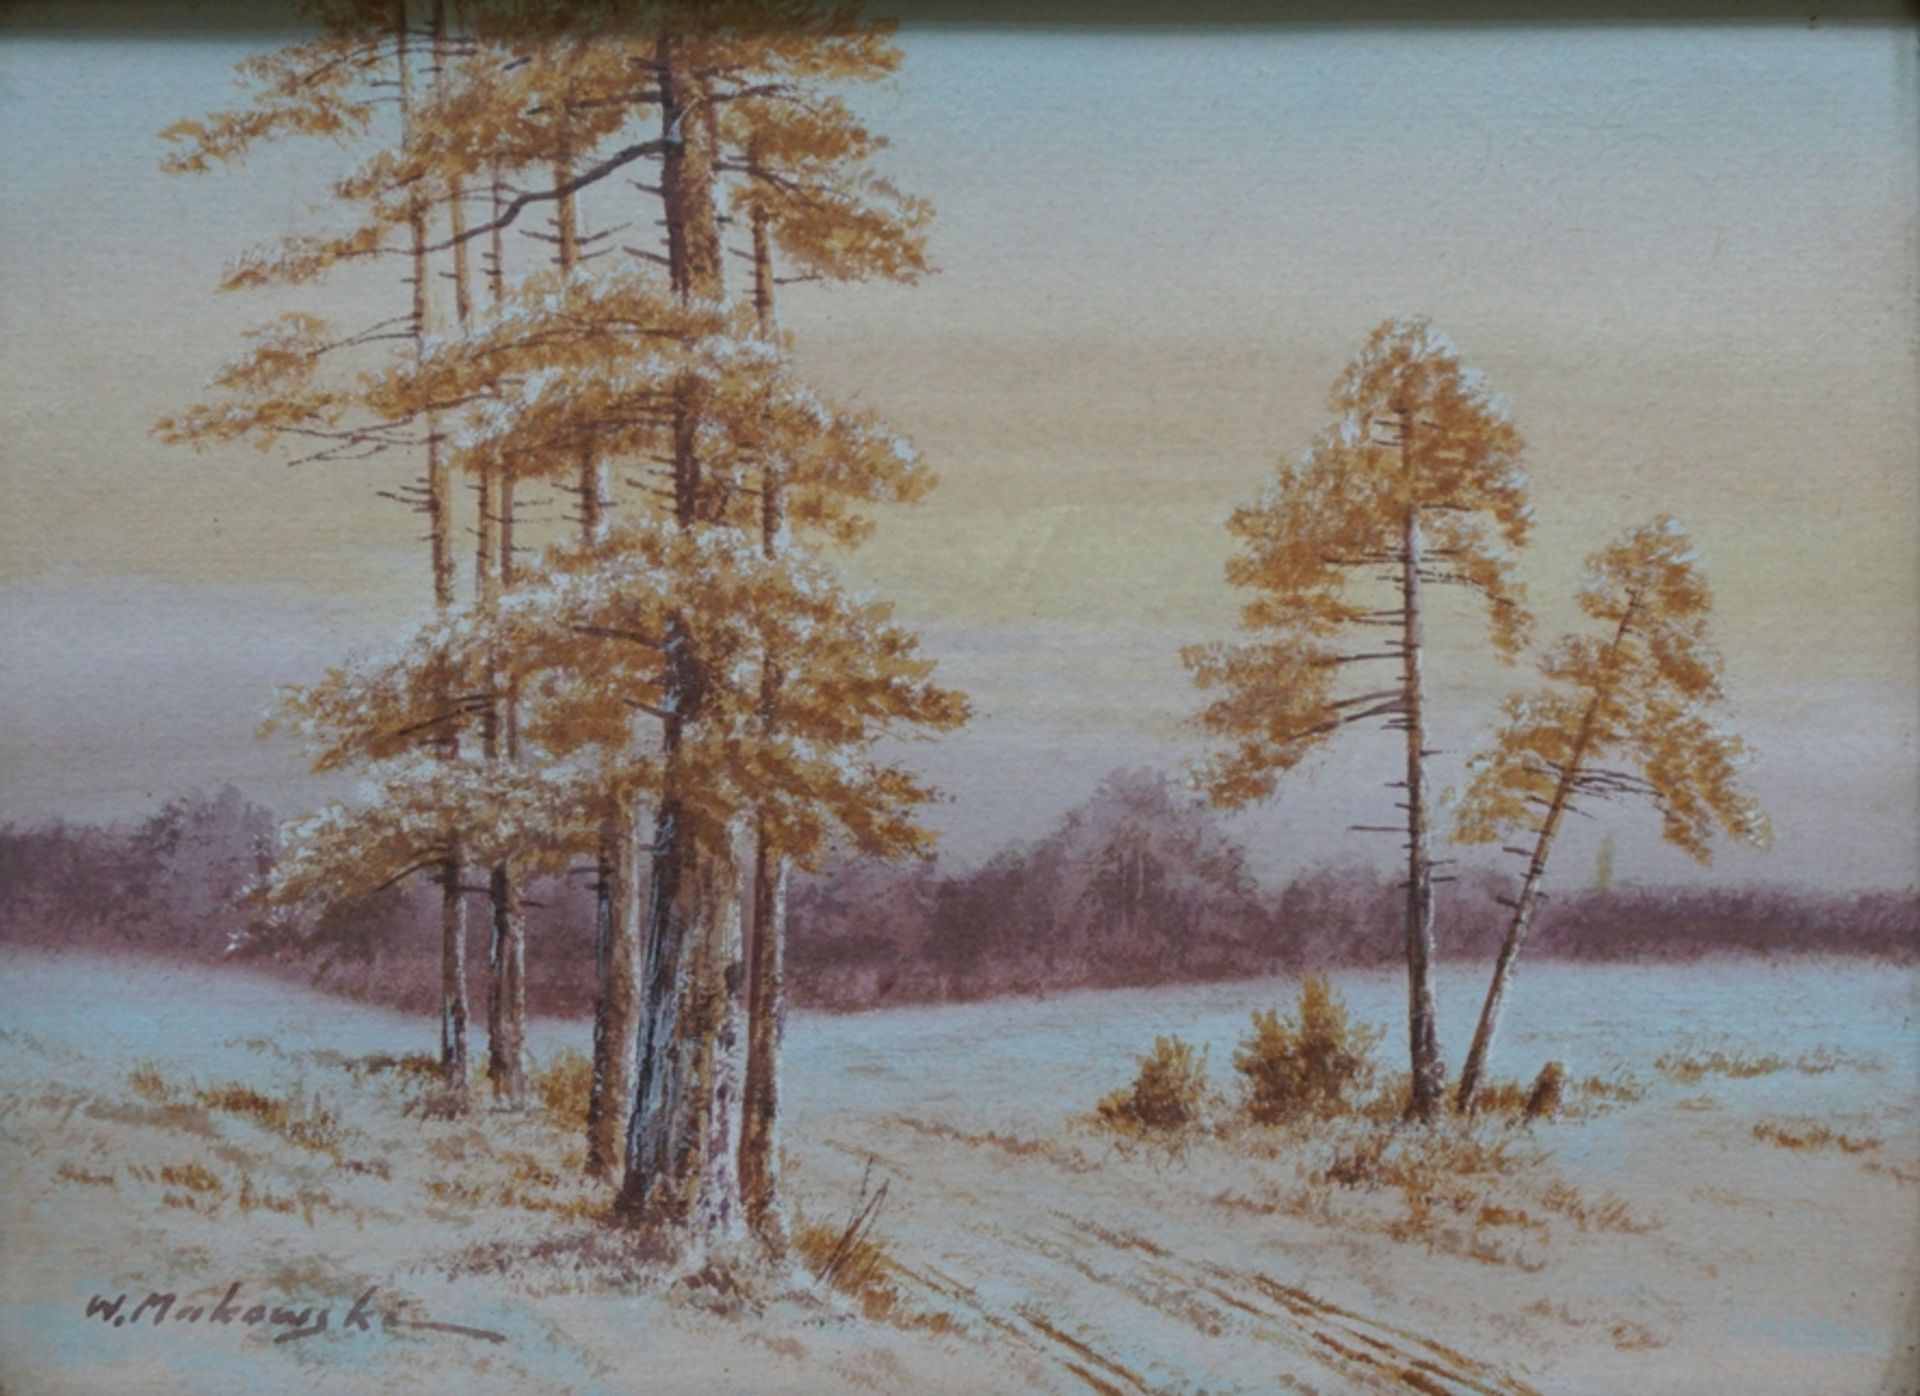 W. Makowski, "Weite Landschaft mit Birken", frühes 20. Jh., Aquarell/Papier